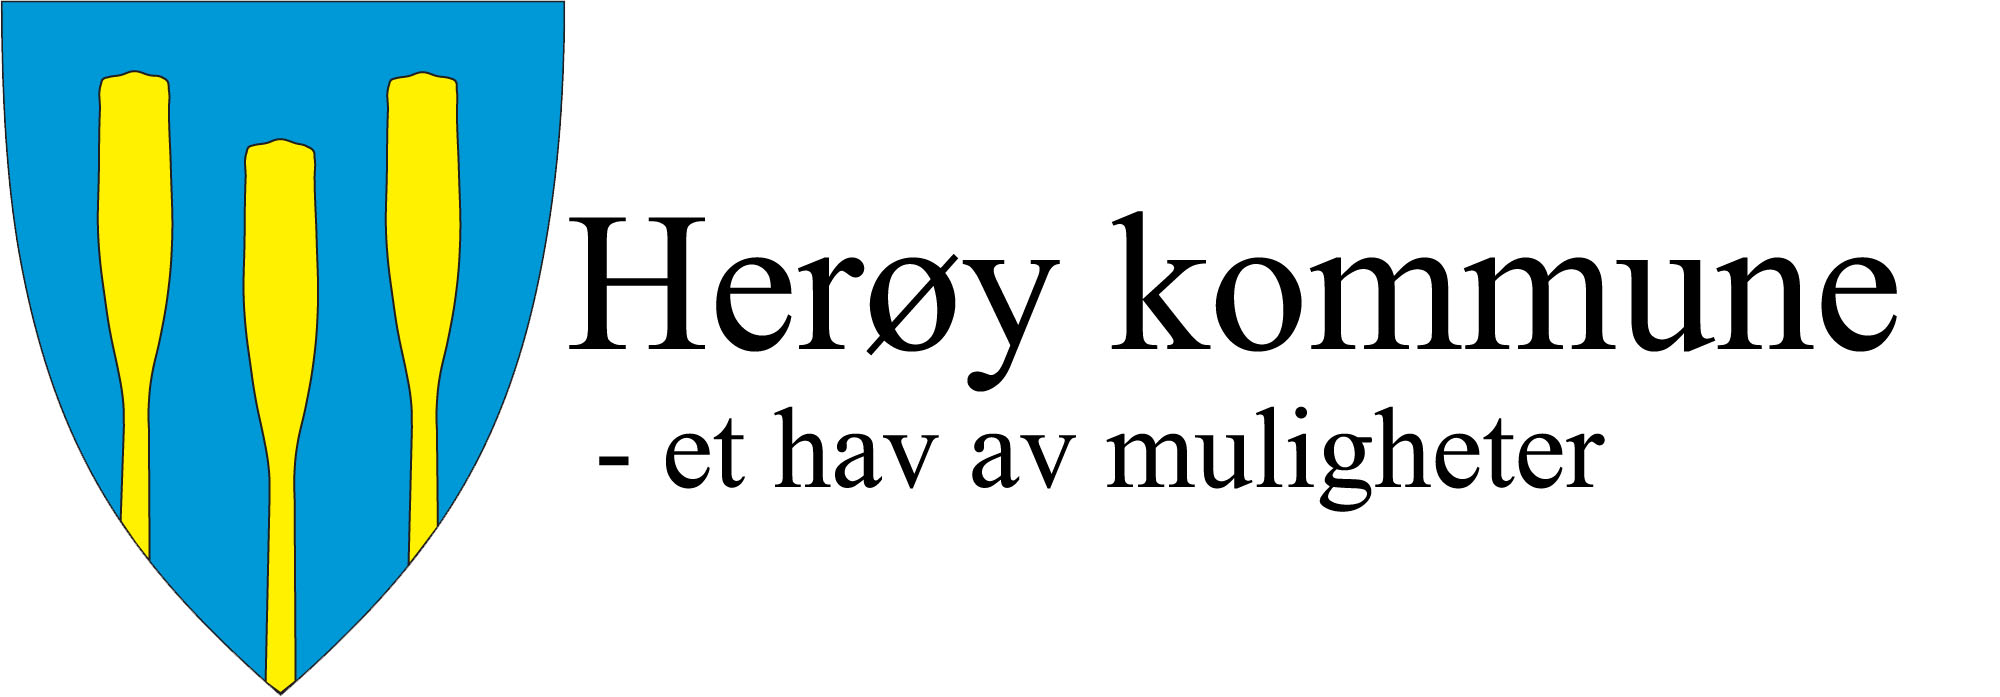 Herøy kommune Teknisk enhet